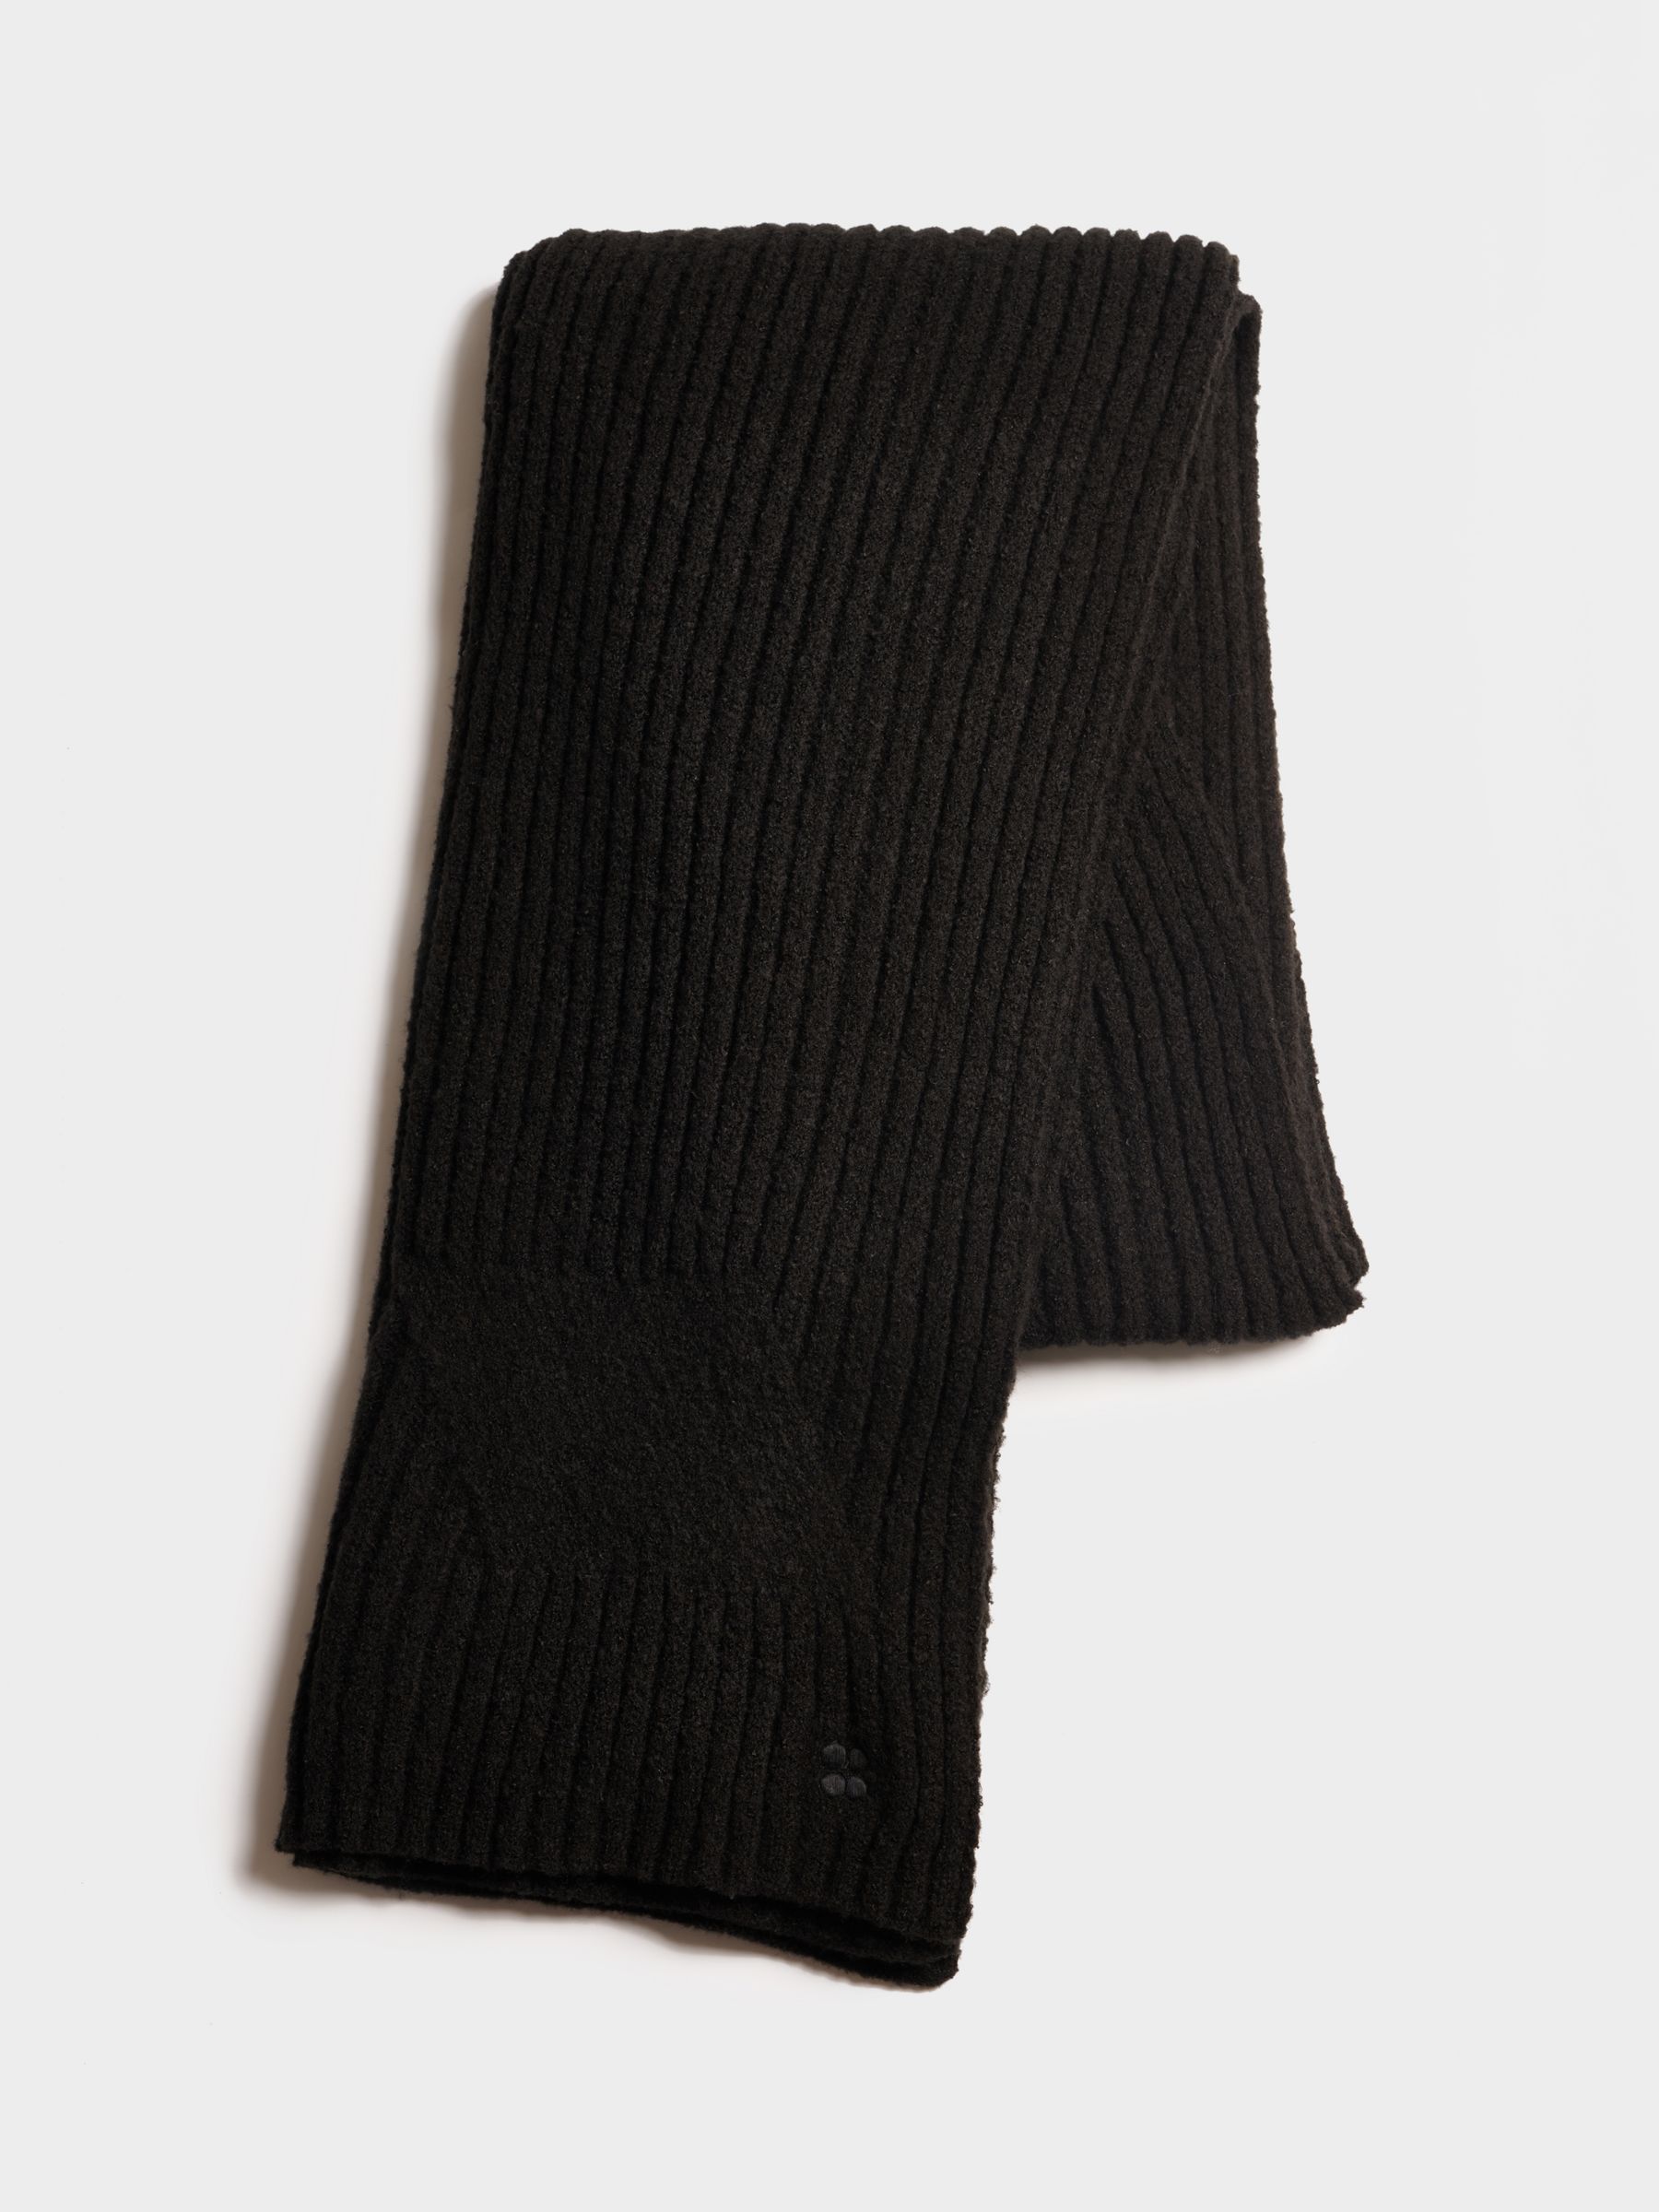 Sweaty Betty Textured Knit Scarf, Black, One Size